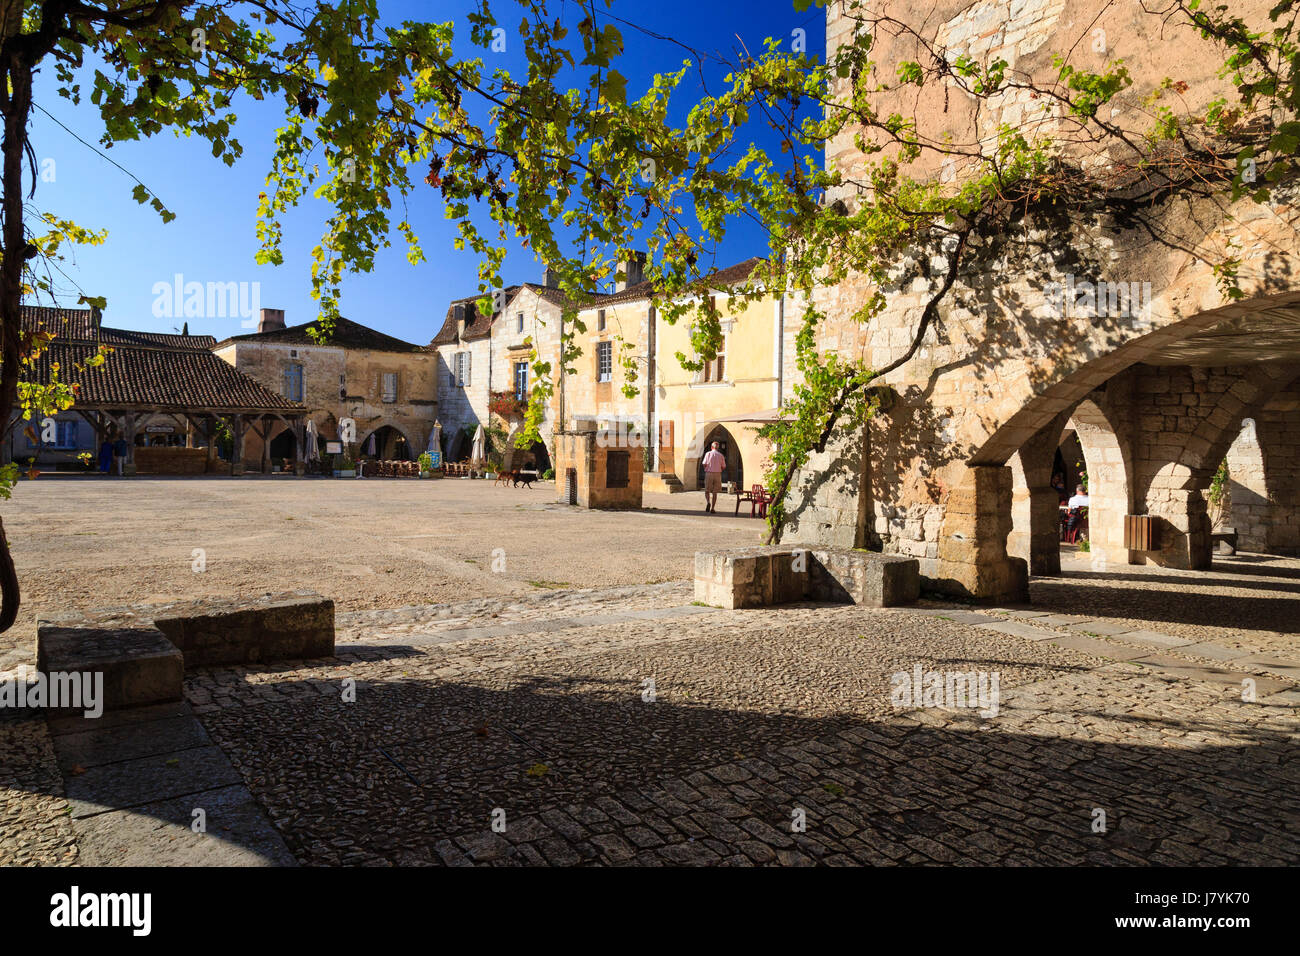 France, Dordogne, Monpazier, les plus Beaux villages de France (les plus beaux villages de France), place des Cornieres Banque D'Images